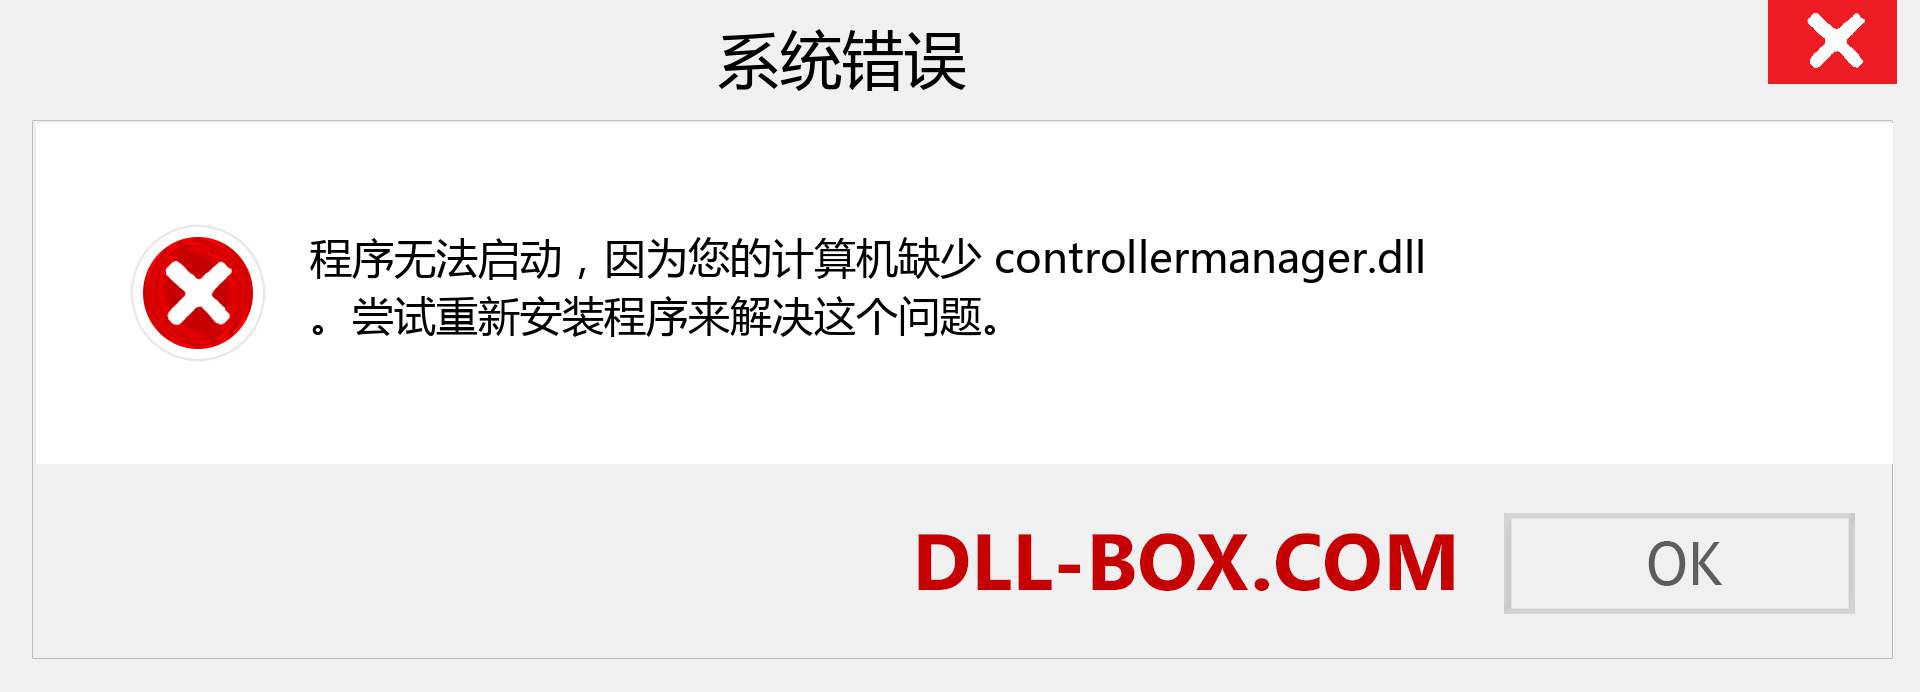 controllermanager.dll 文件丢失？。 适用于 Windows 7、8、10 的下载 - 修复 Windows、照片、图像上的 controllermanager dll 丢失错误